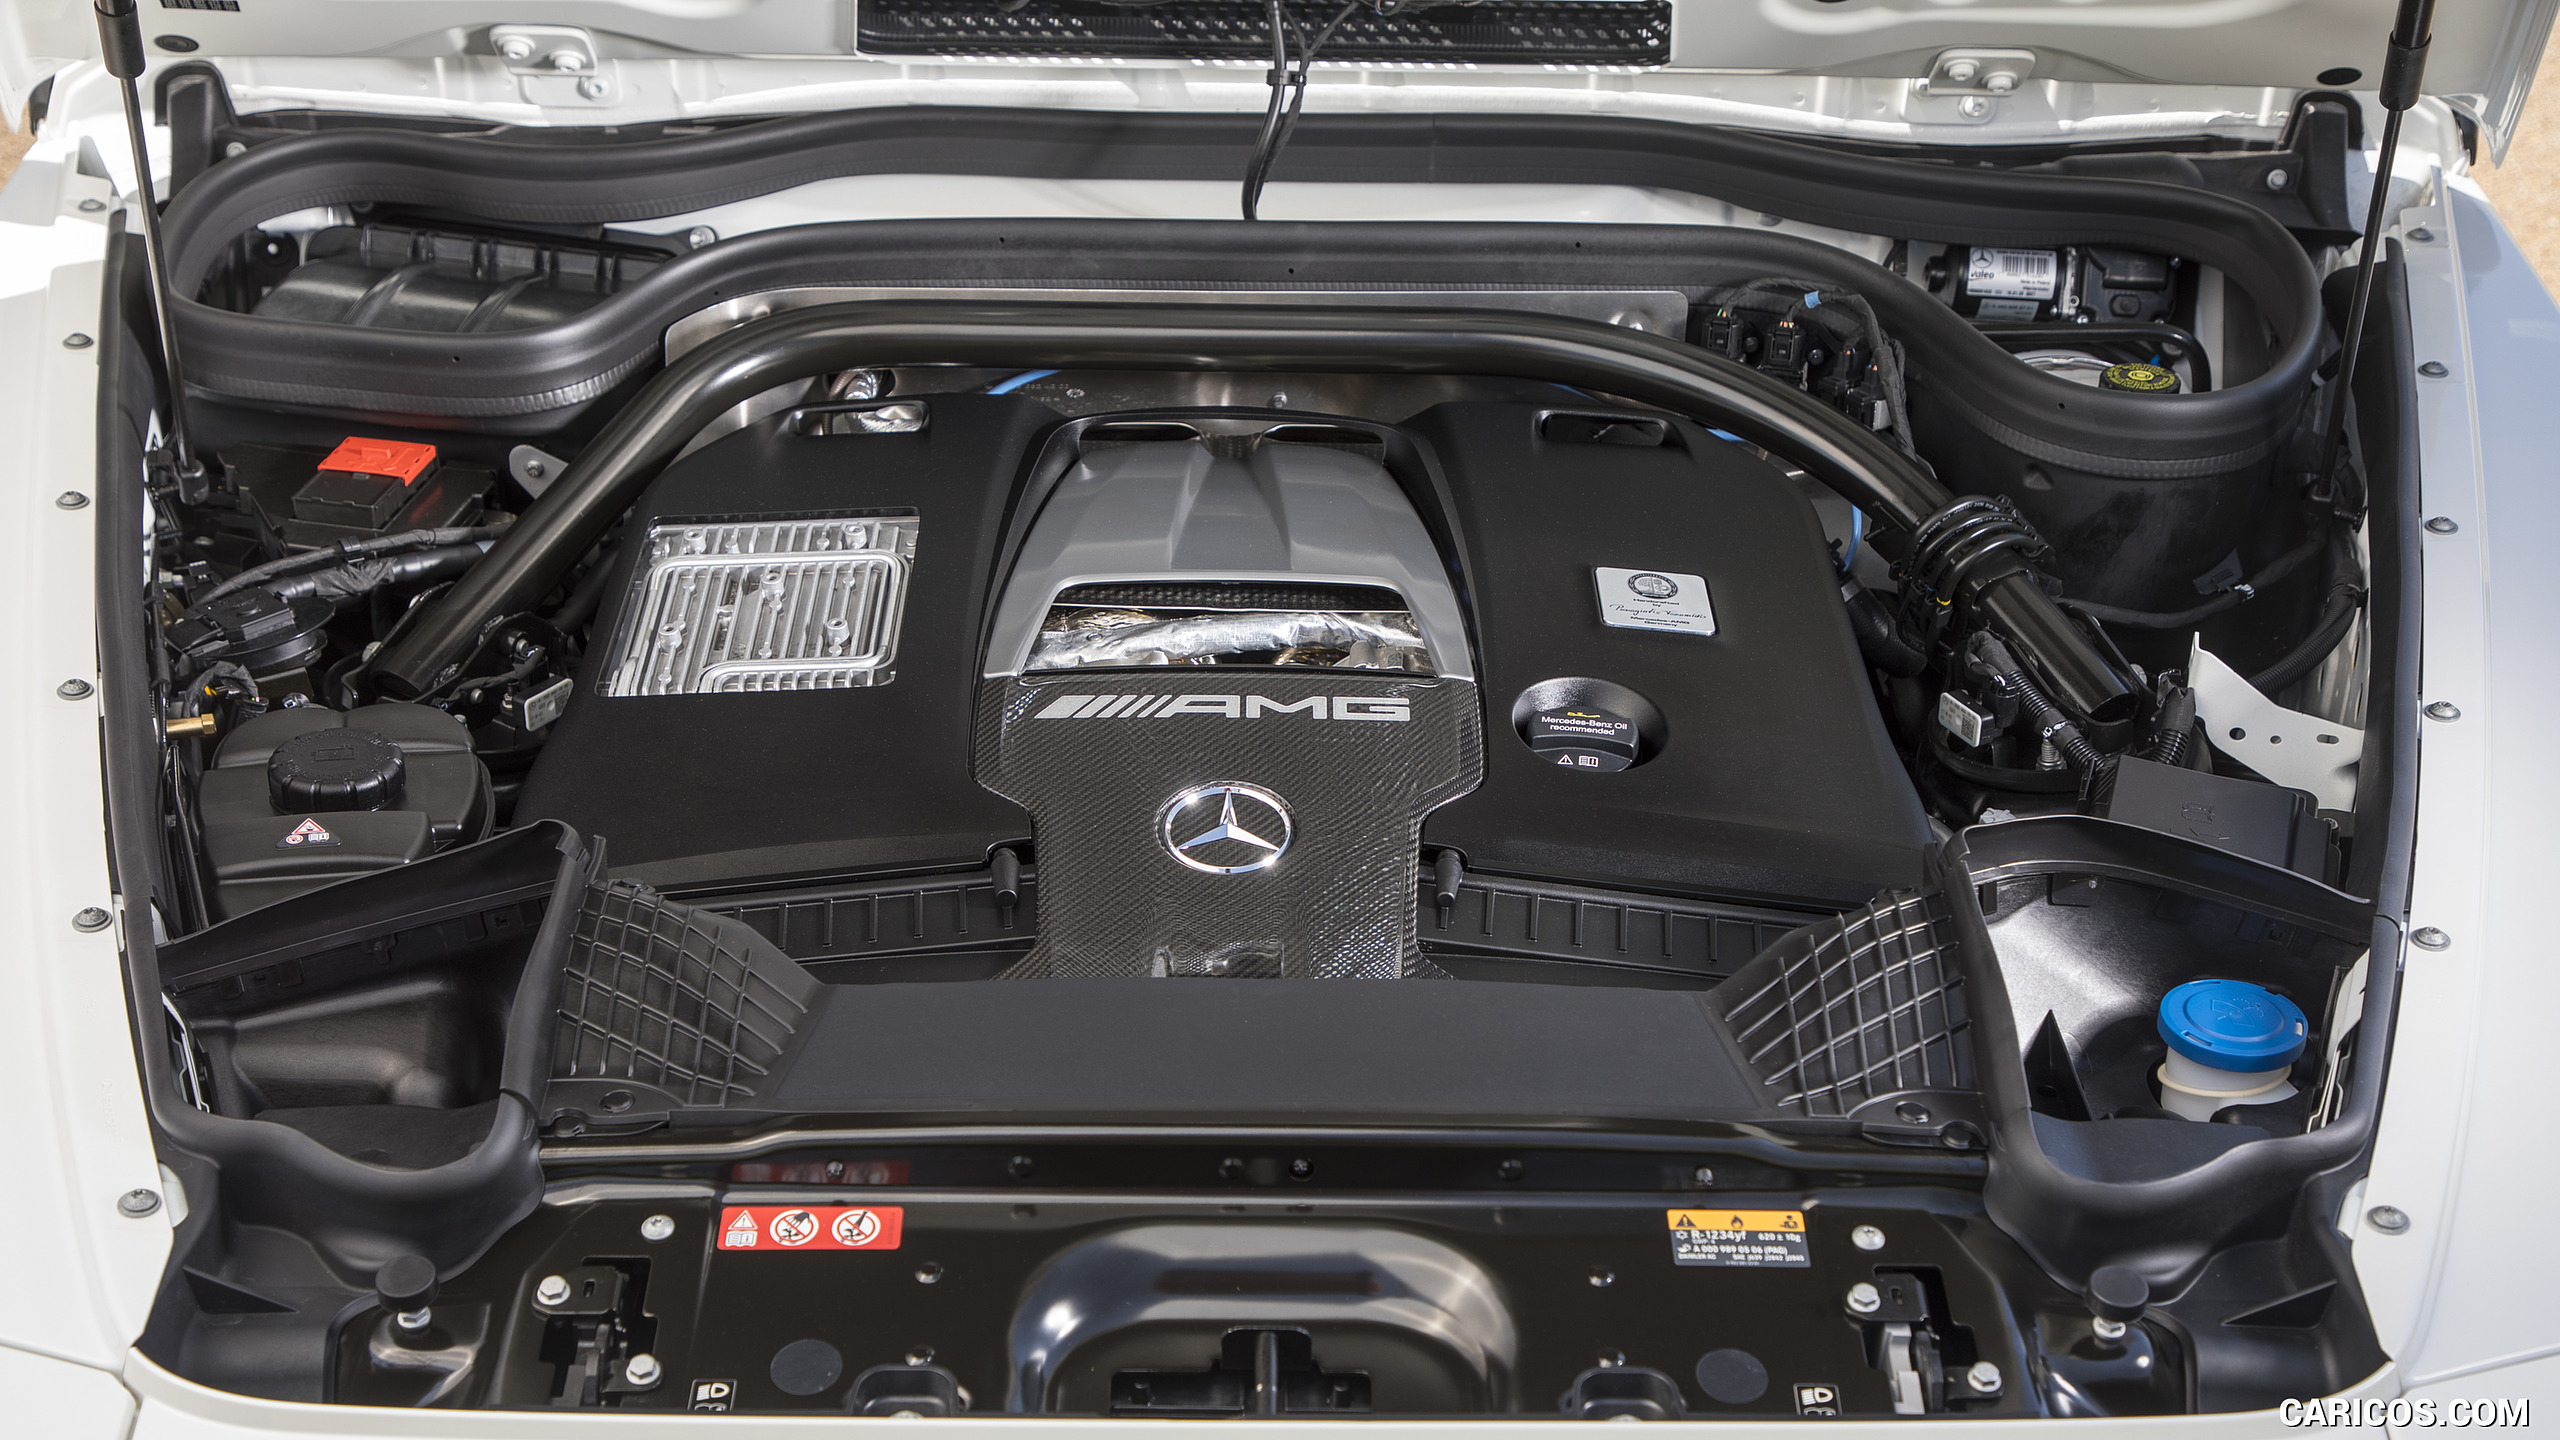 2019 Mercedes-AMG G63 (Color: Designo Diamond White Bright) - Engine, #103 of 452